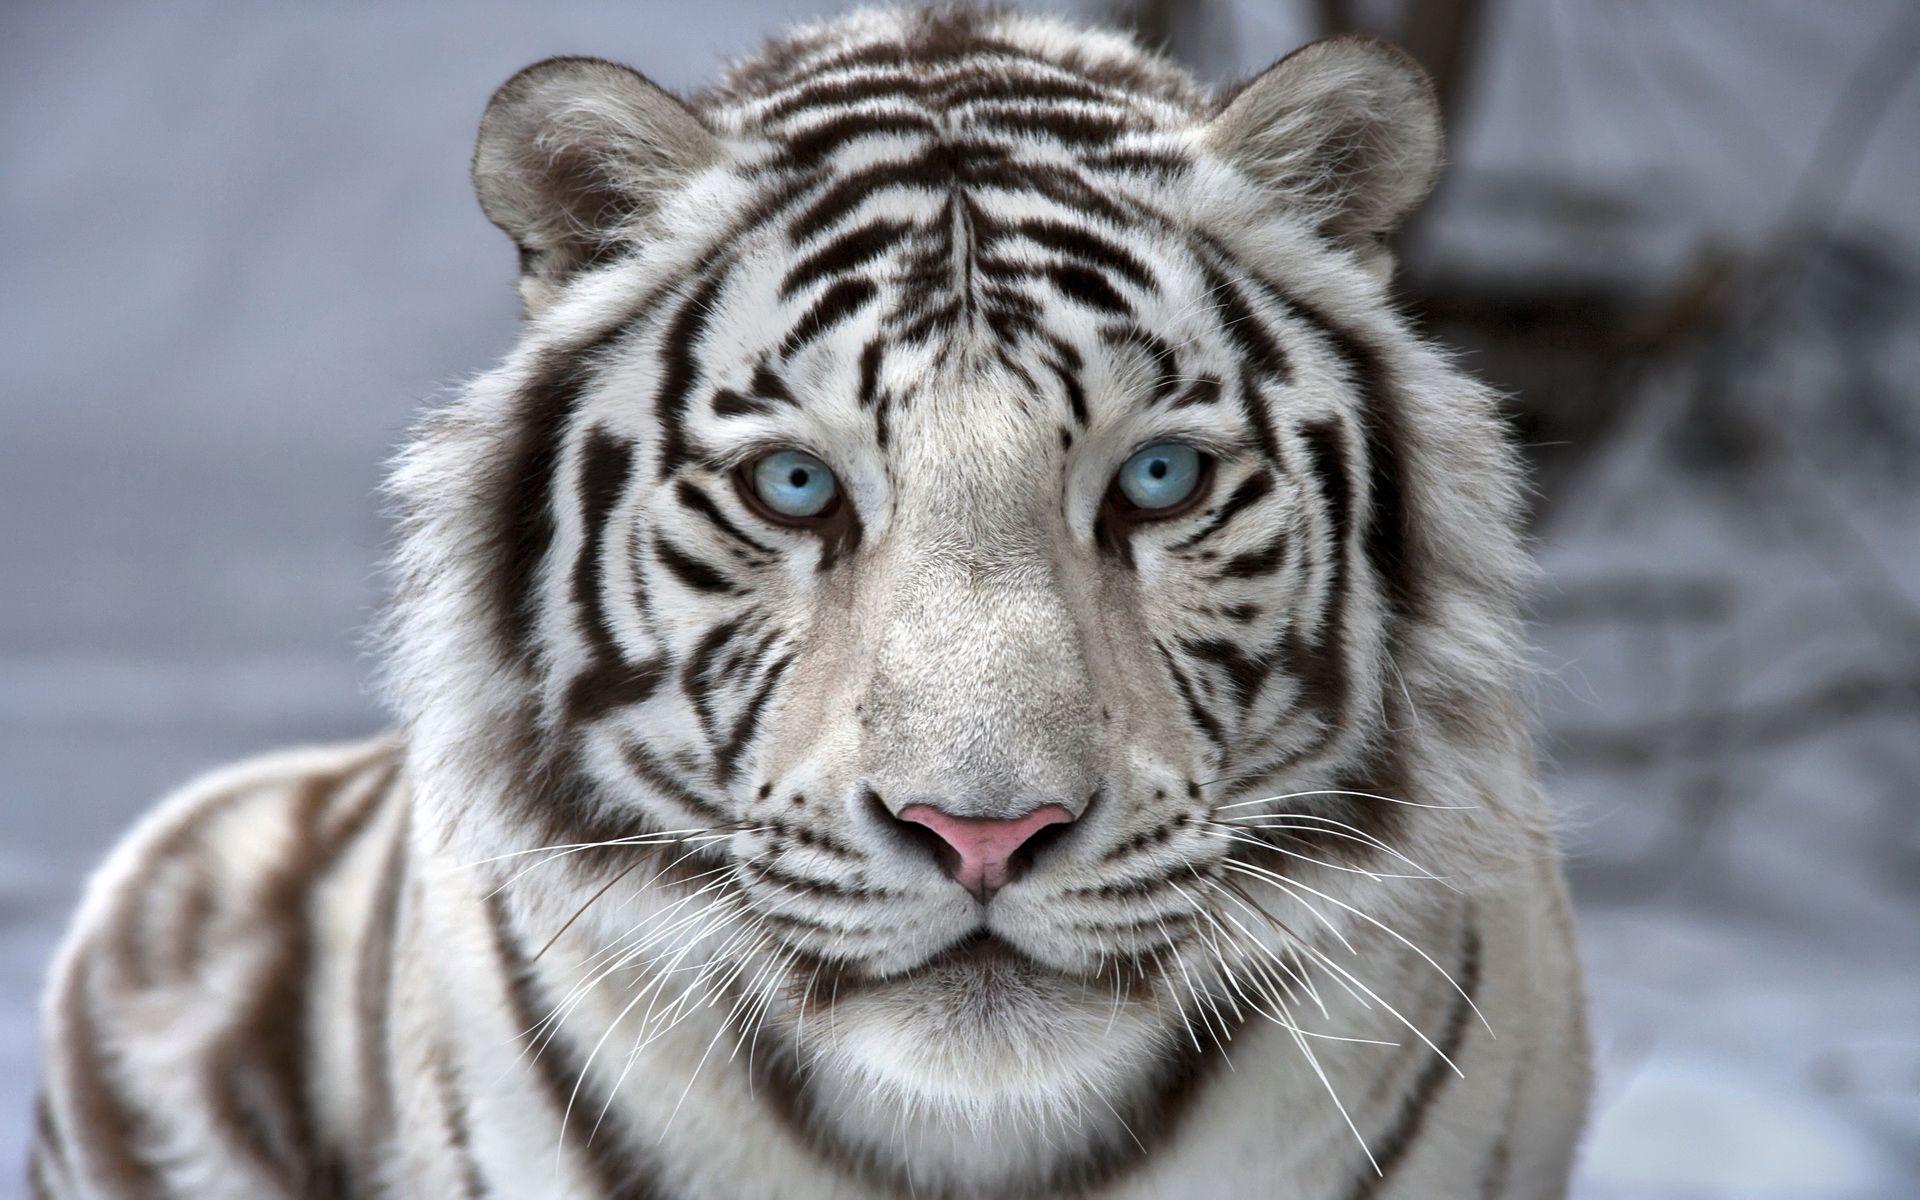 Cool White Tiger Wallpapers - Top Những Hình Ảnh Đẹp